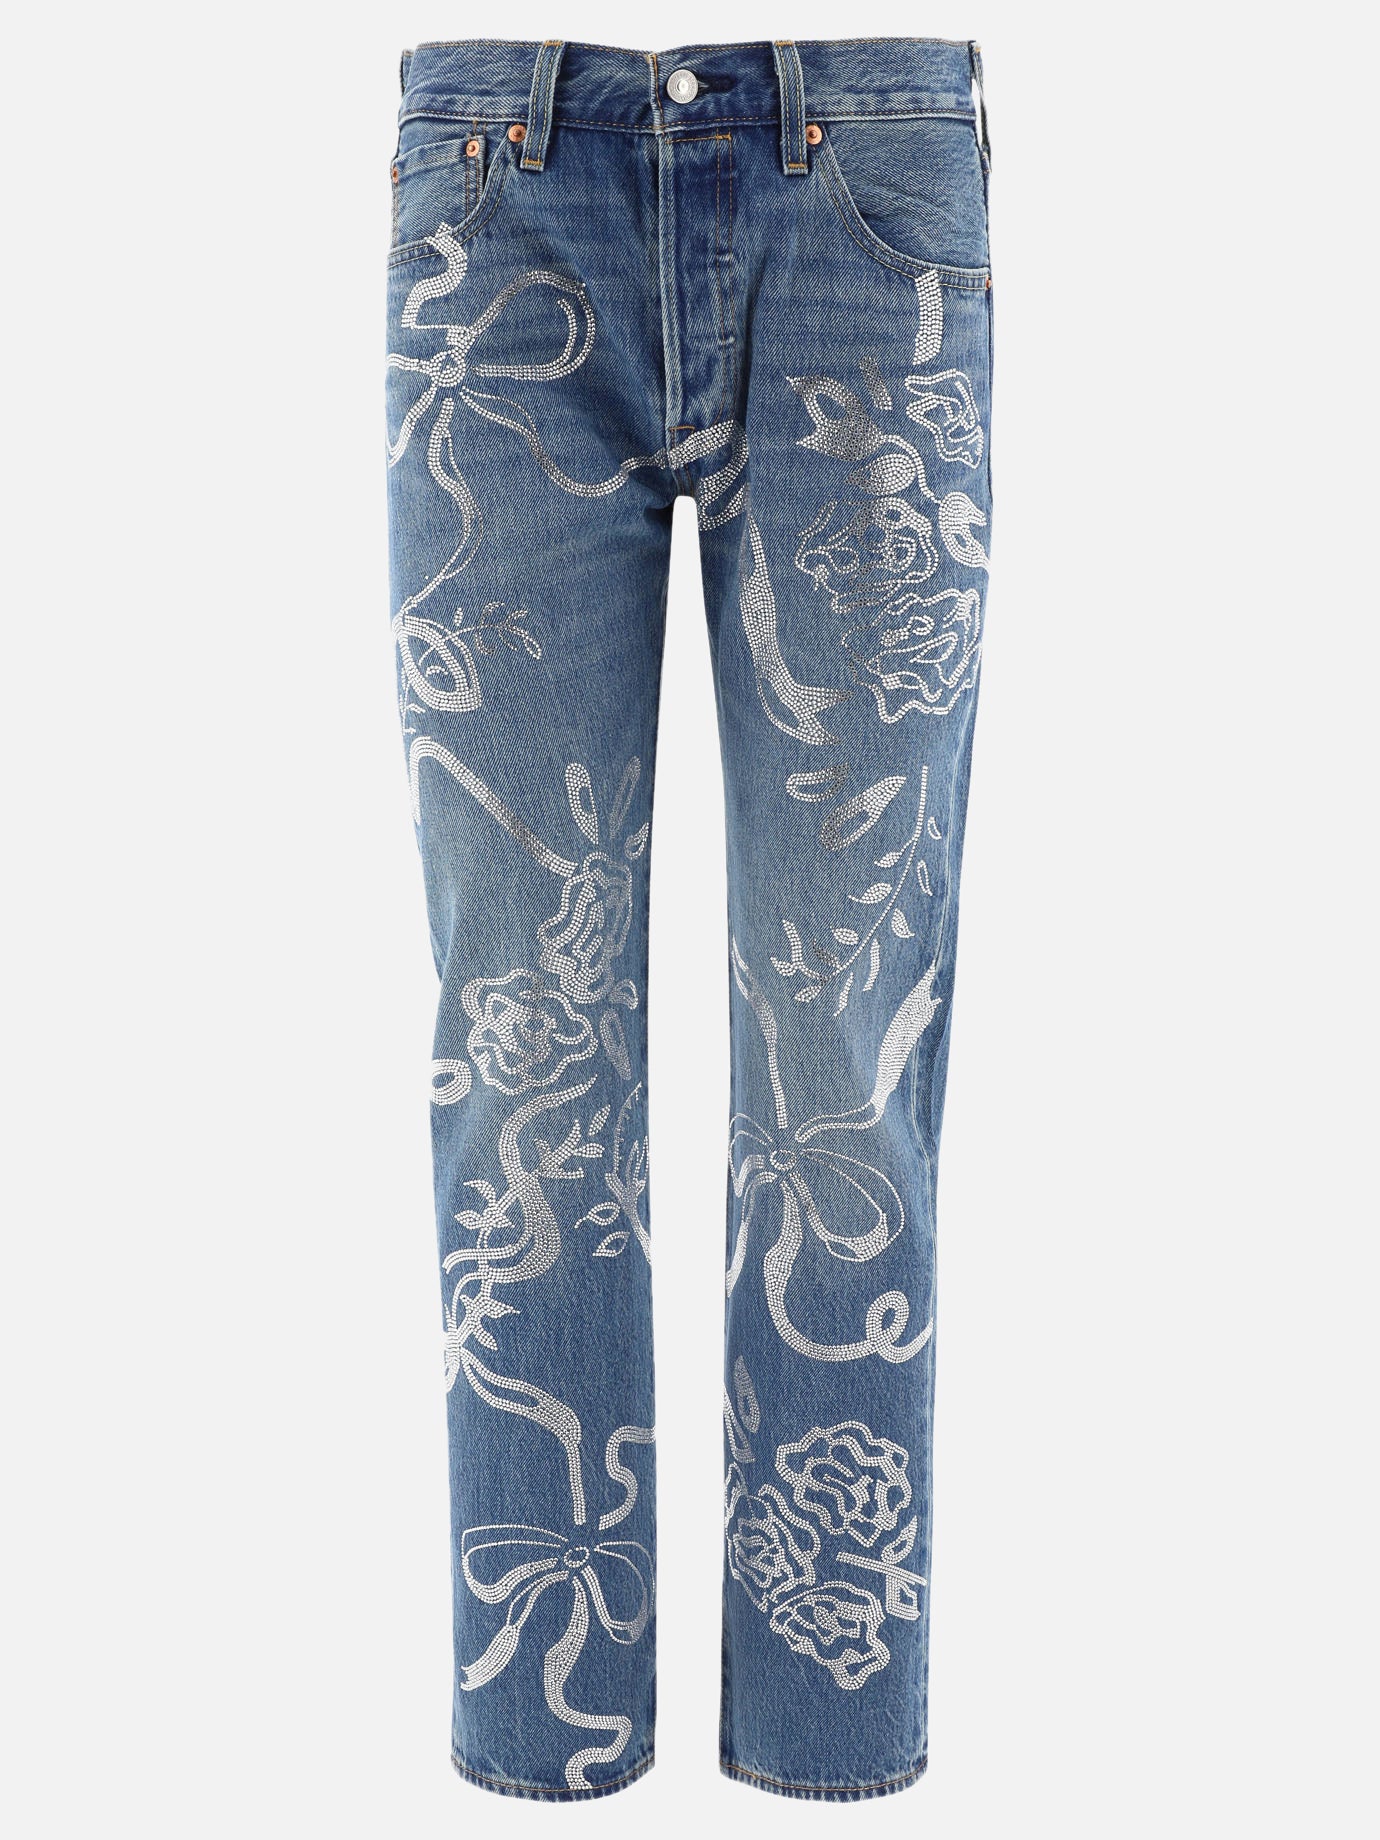 "Collina Strada X Levi's" jeans